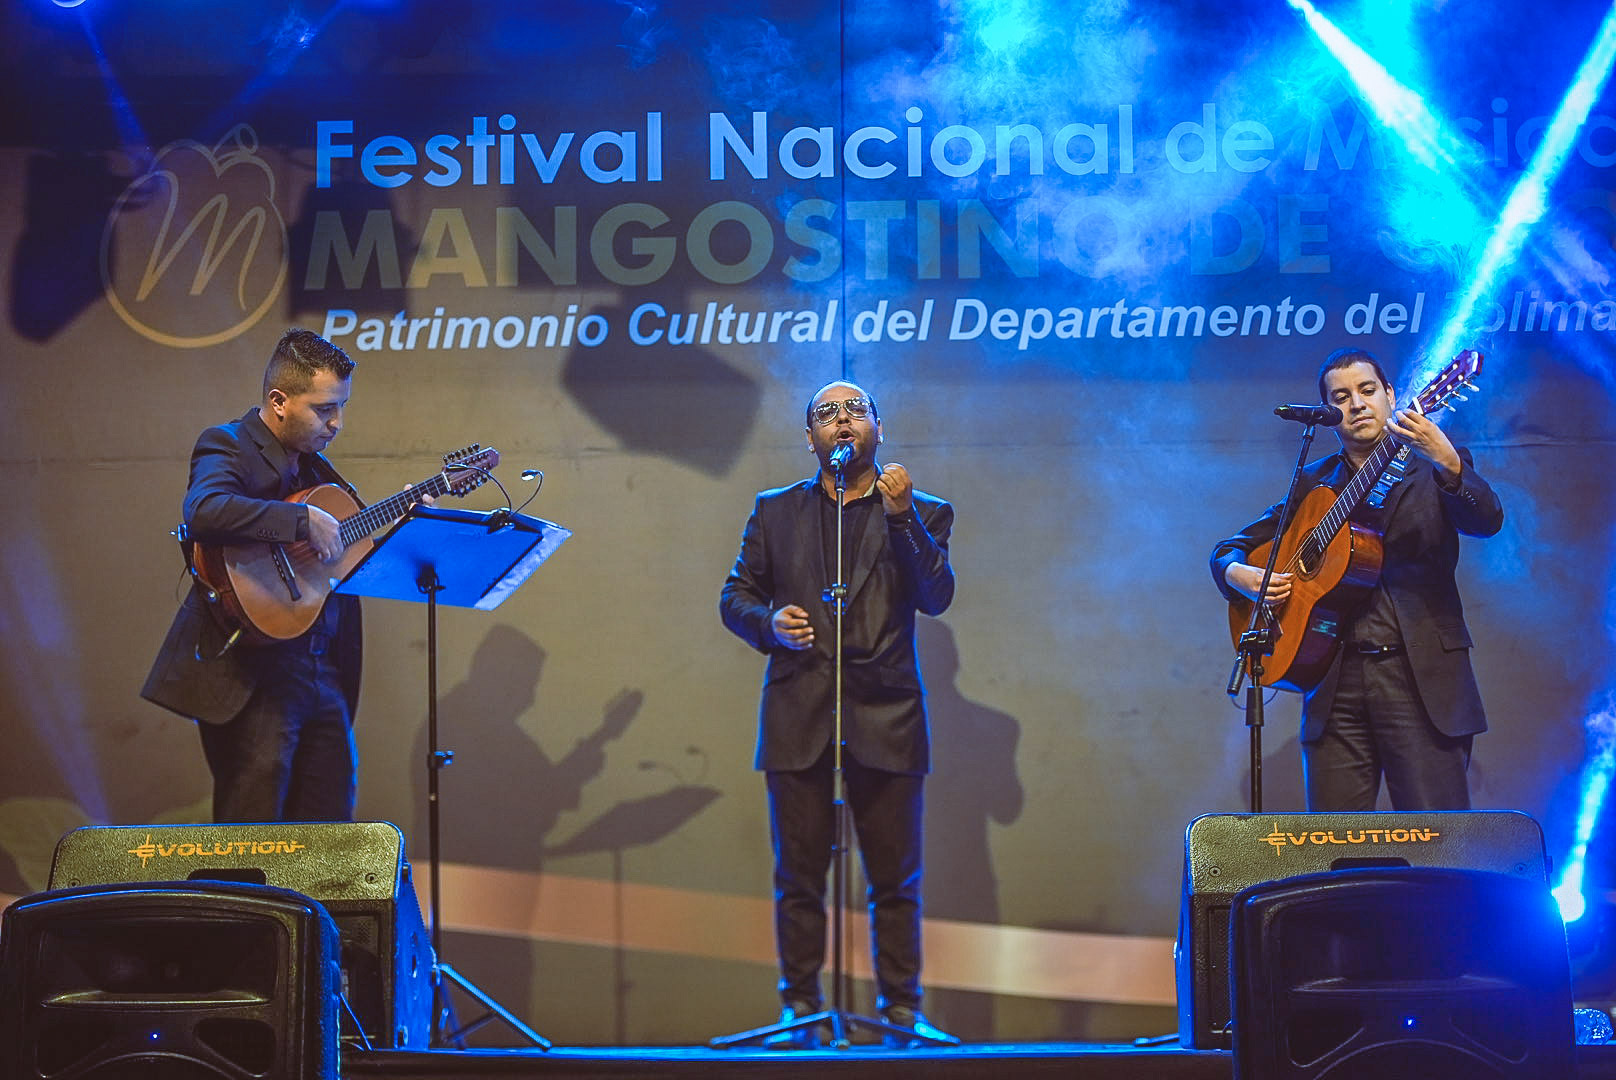 CONOZCA LOS GANADORES DEL 27° FESTIVAL NACIONAL DE MÚSICA “MANGOSTINO DE ORO”